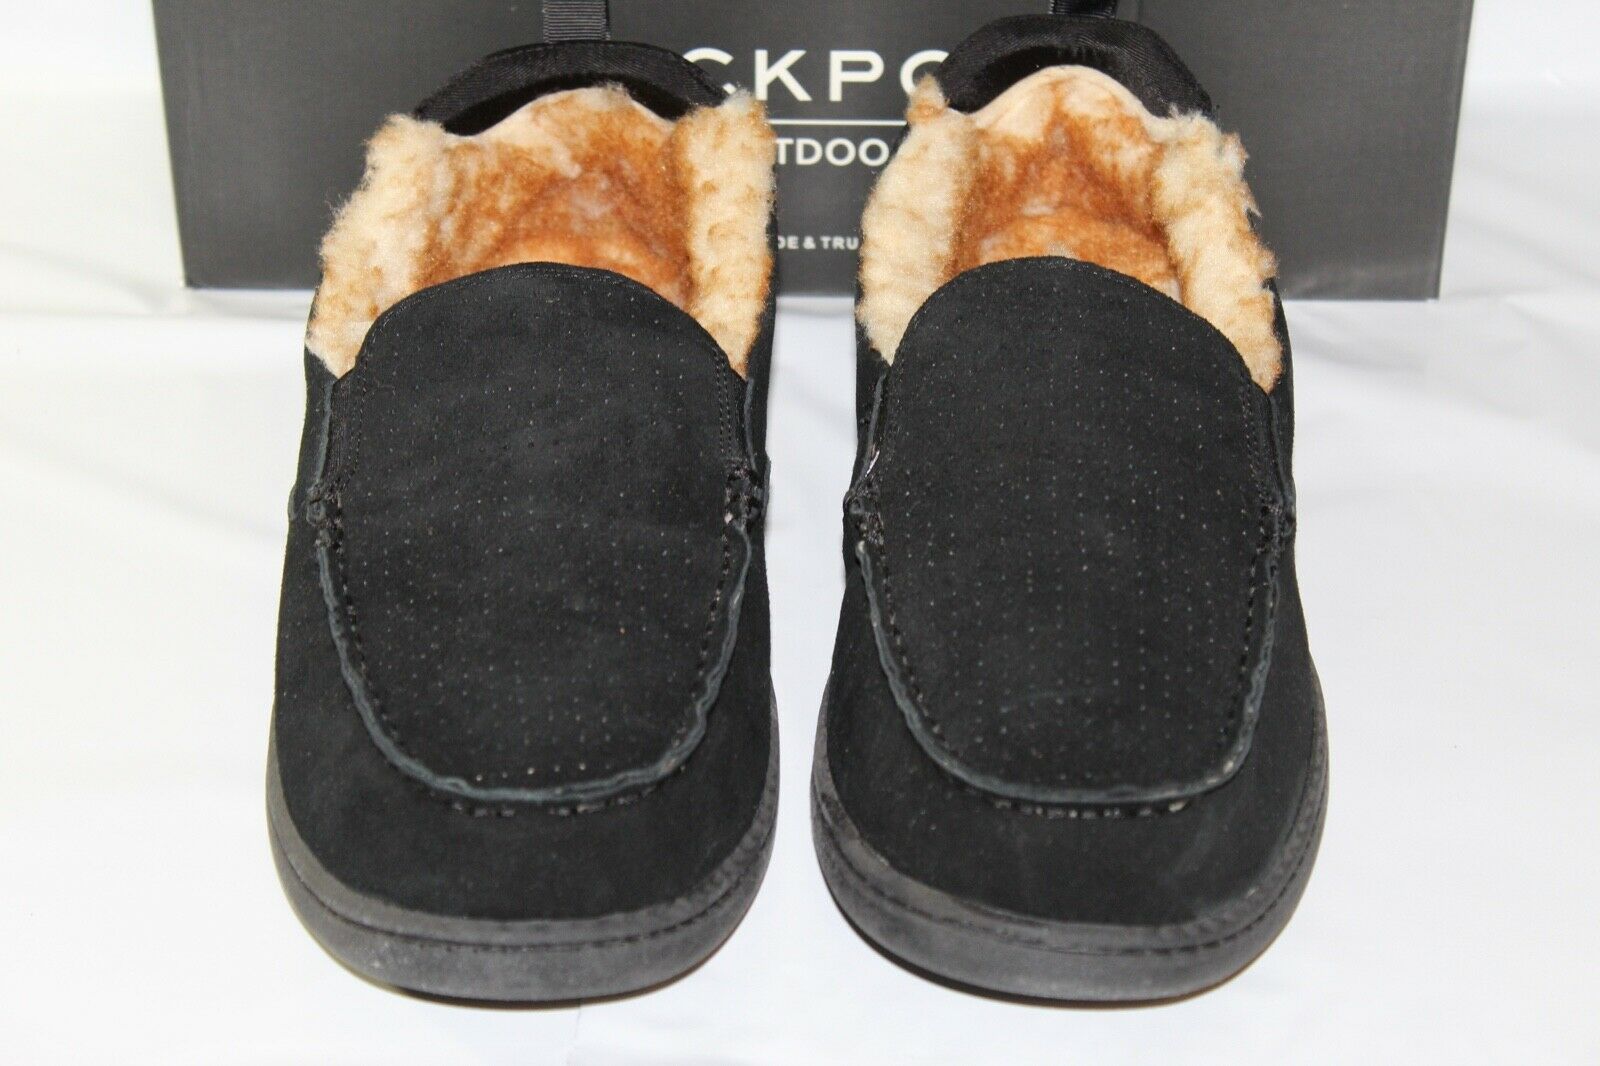 men's rockport moccasin slippers